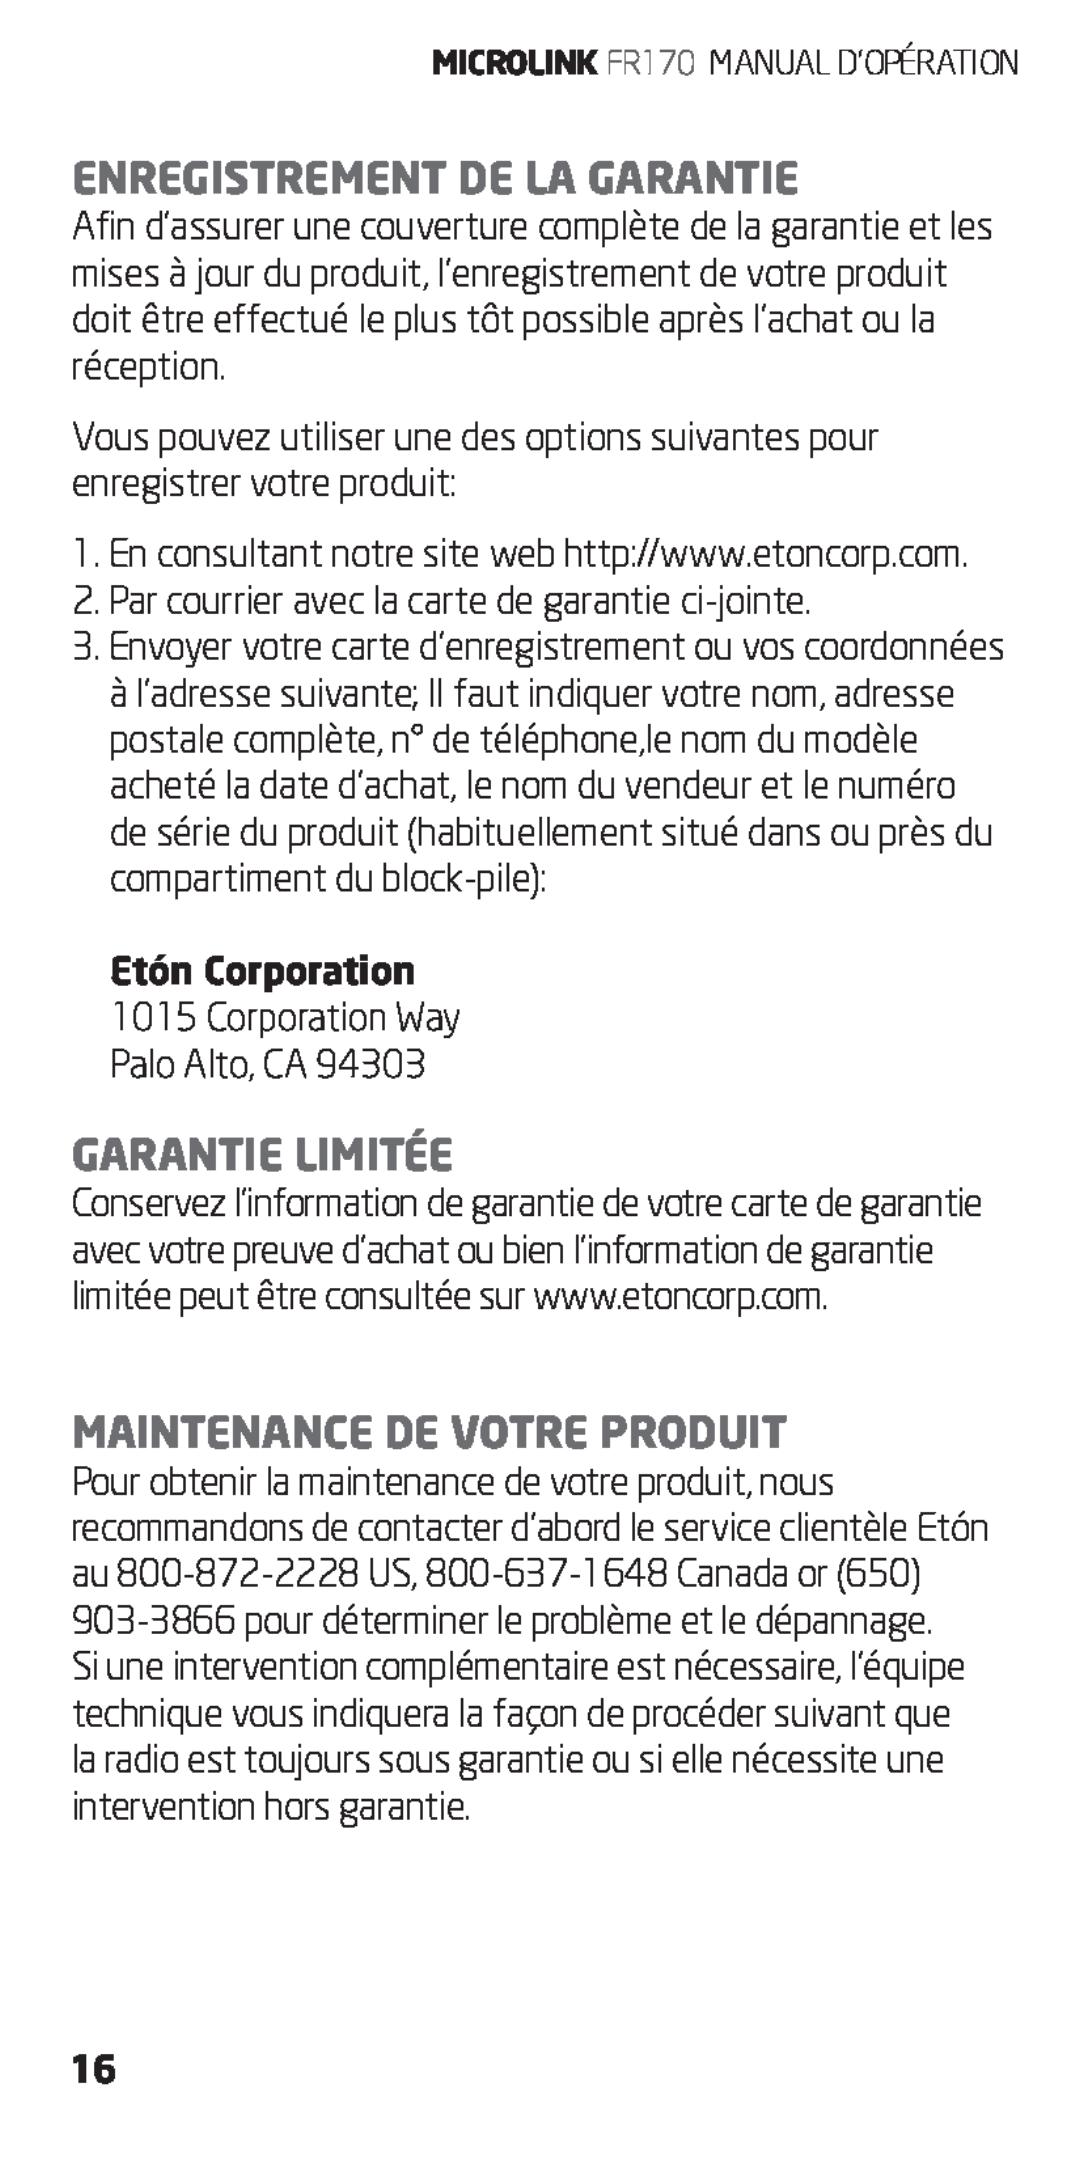 Eton FR170 owner manual Enregistrement De La Garantie, Garantie Limitée, Maintenance De Votre Produit, Etón Corporation 